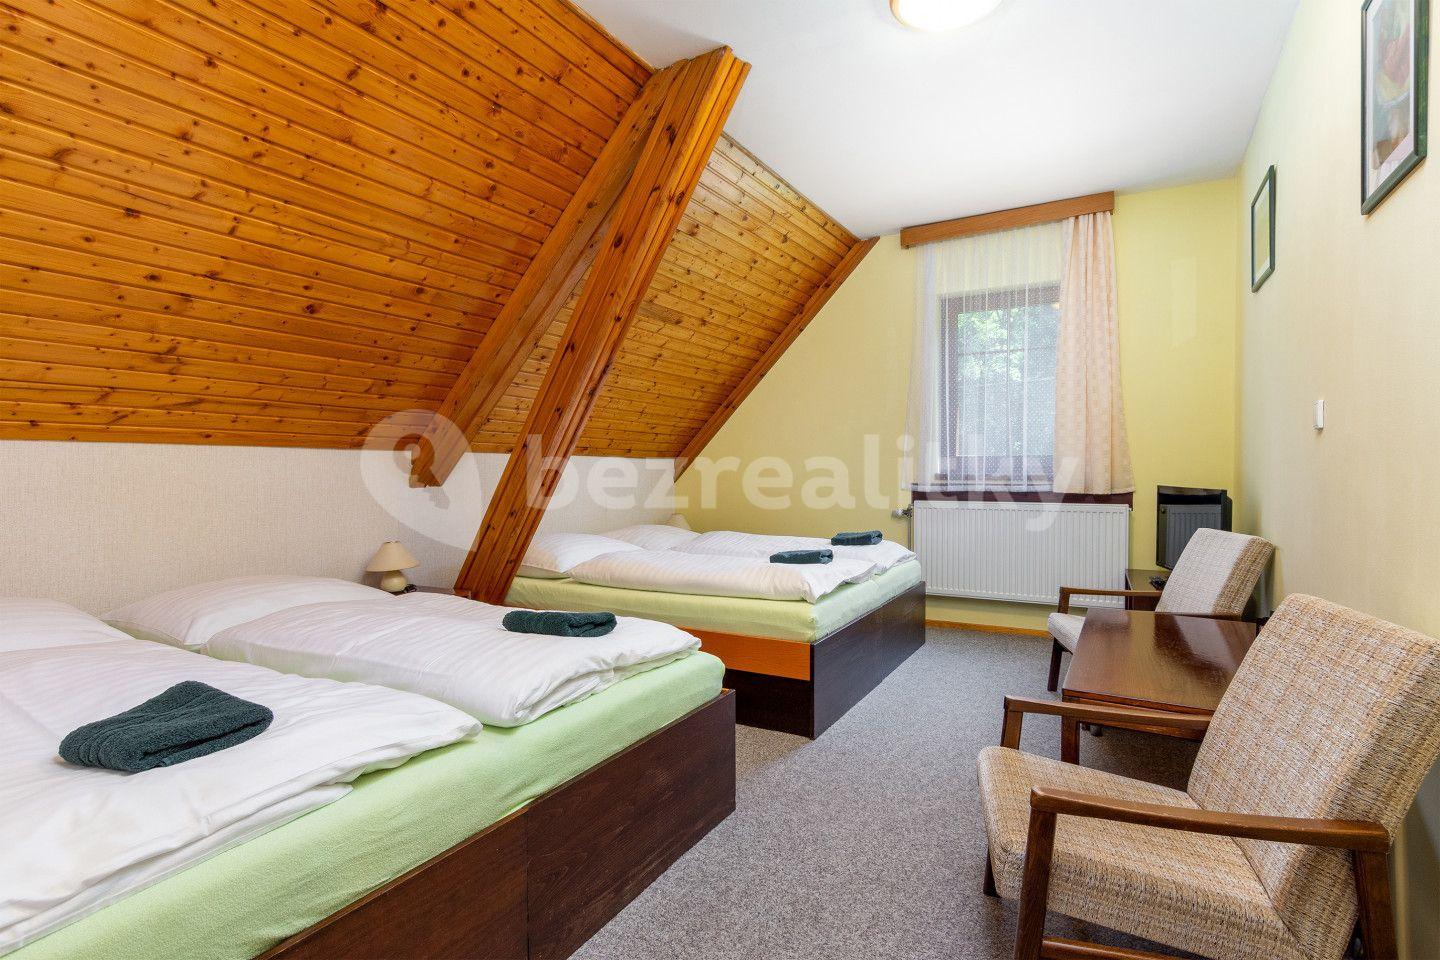 Predaj nebytového priestoru 2.754 m², Deštné v Orlických horách, Královéhradecký kraj